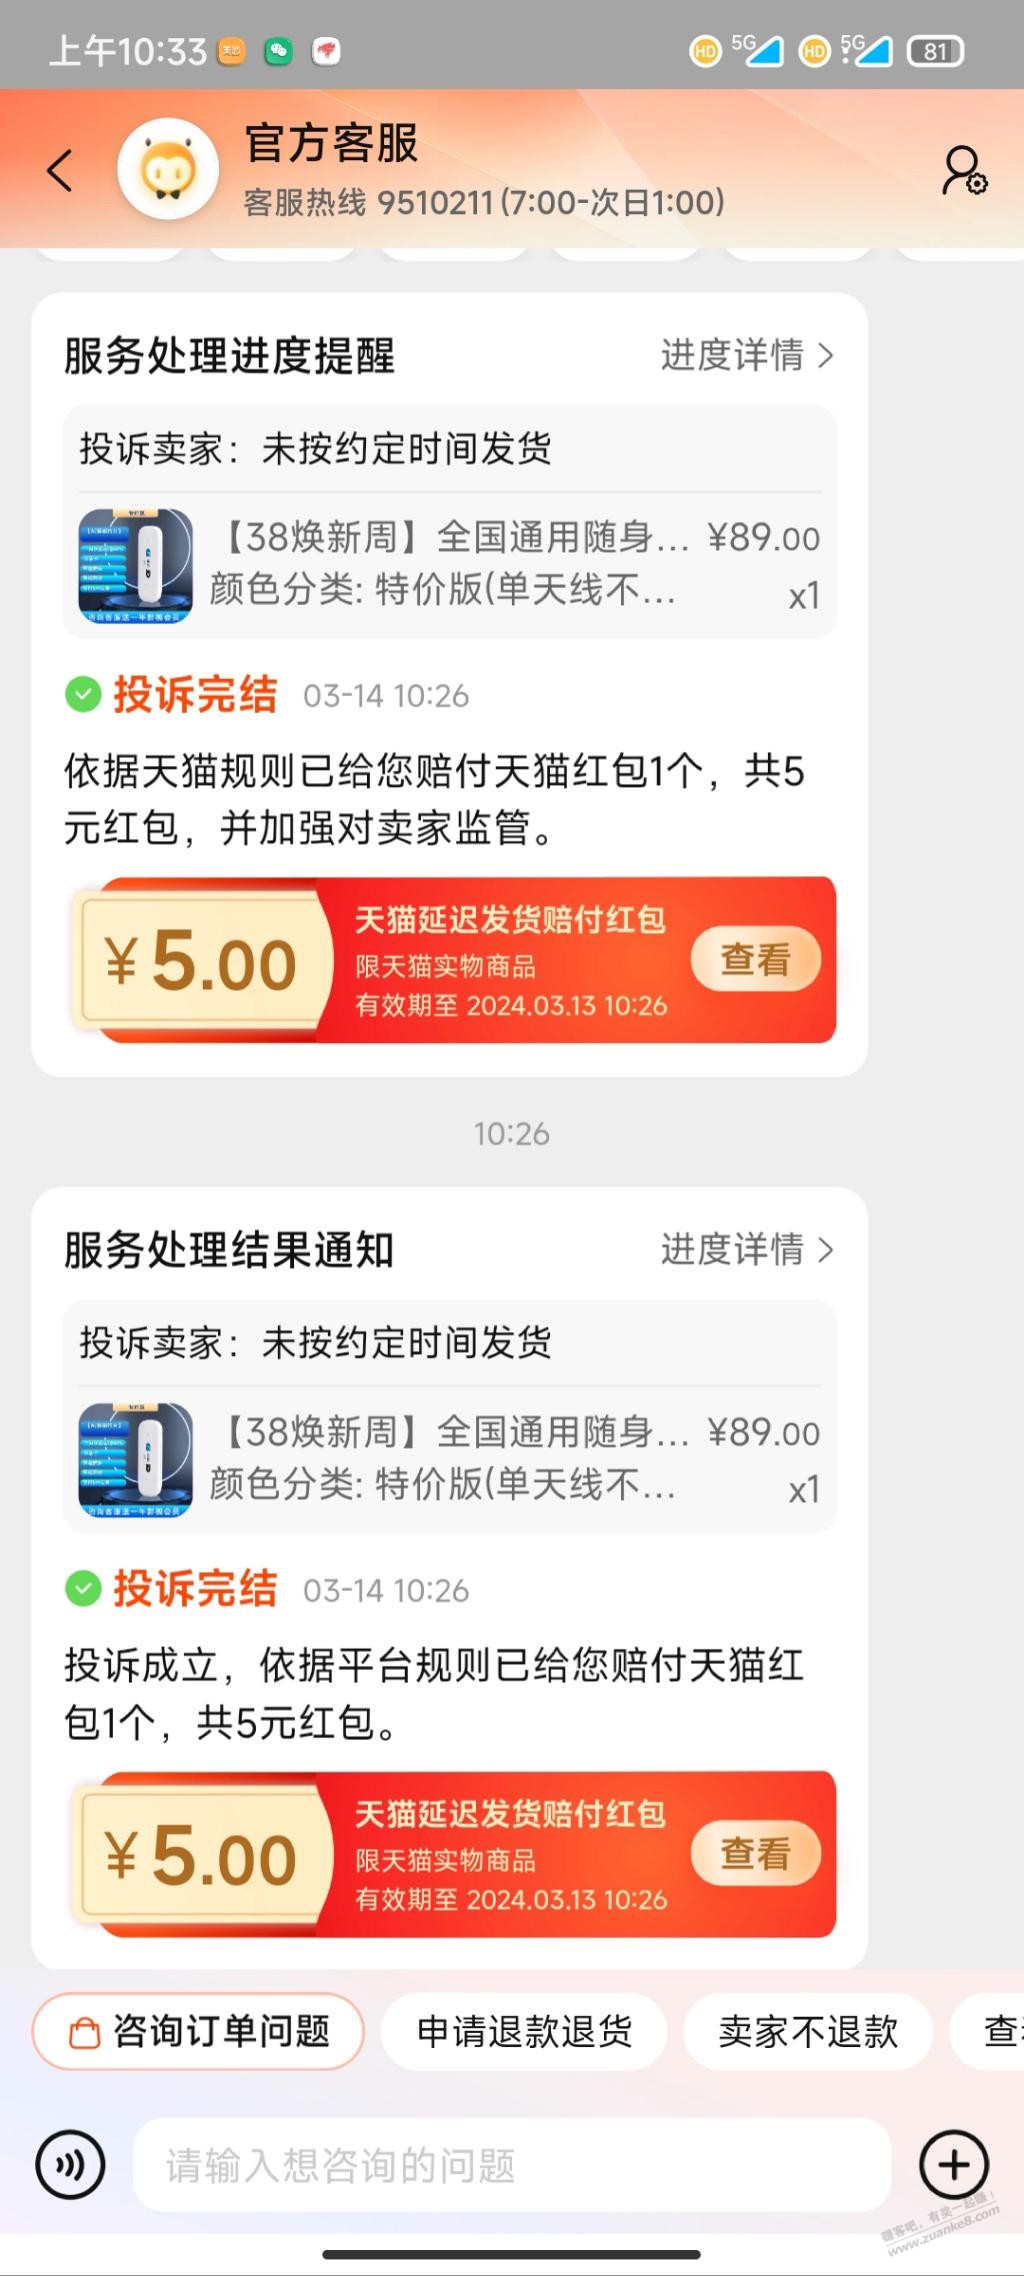 s宁wifi 延迟发货赔偿5元